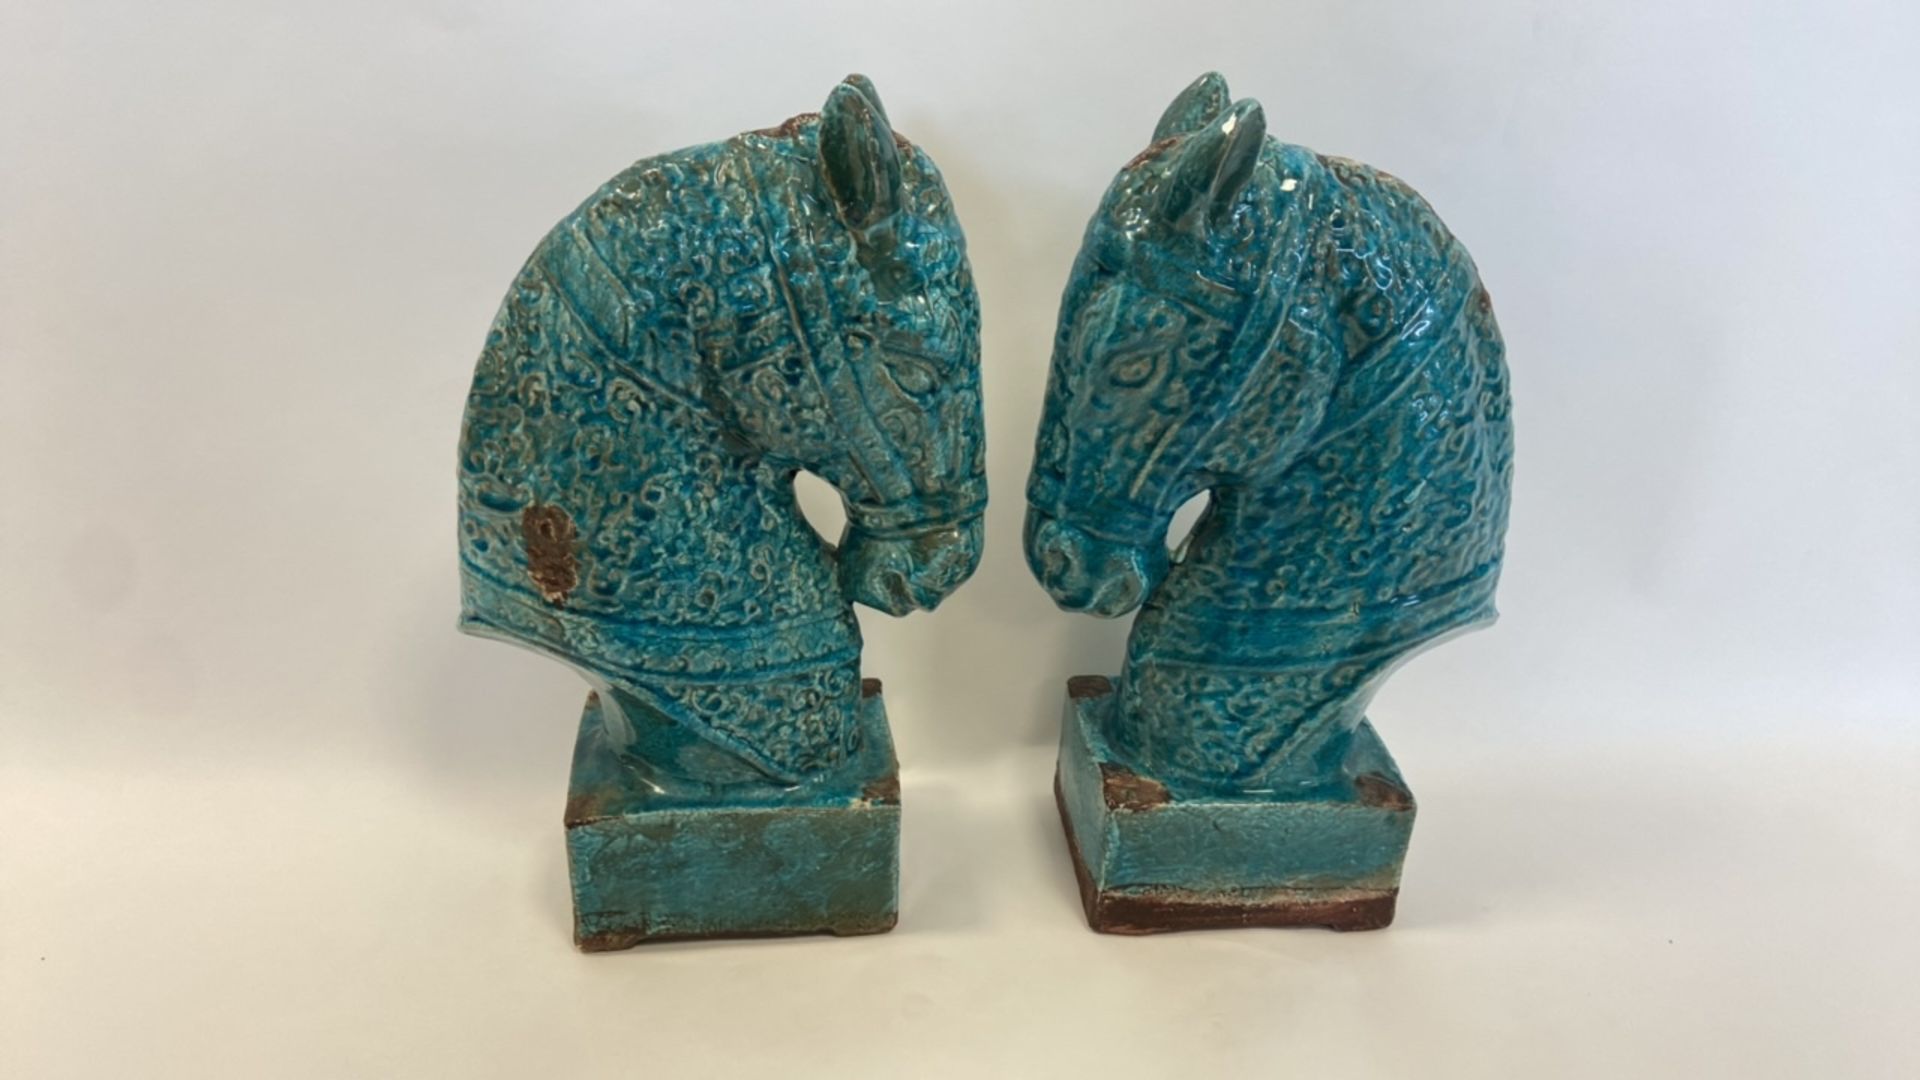 Antique, Handmade Ceramic Horse Statue - Image 7 of 8